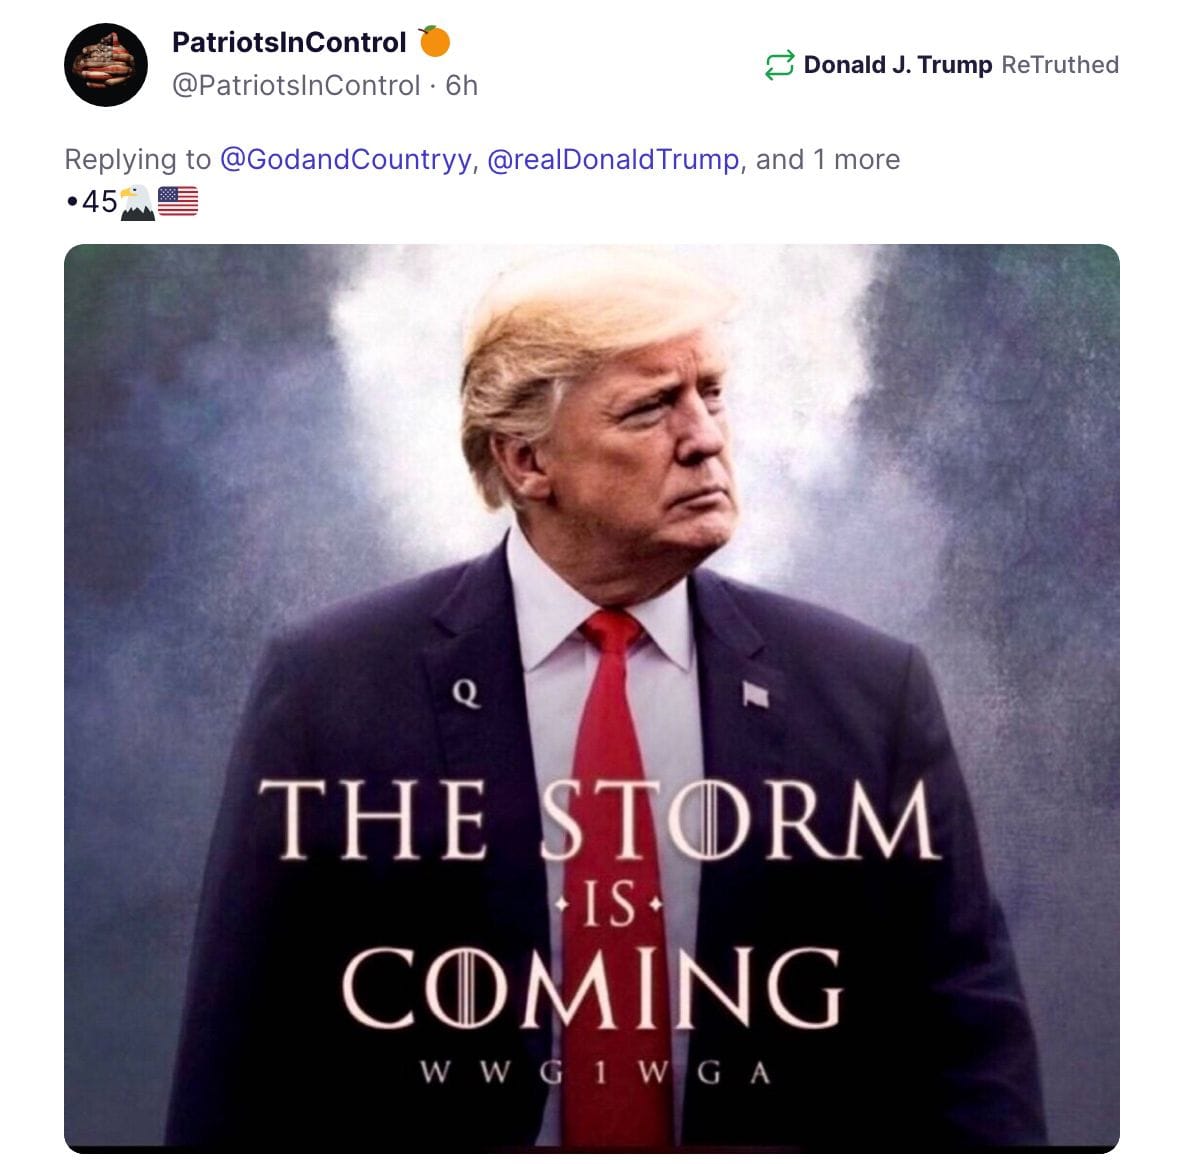 "Der Sturm kommt": Dieses Bild mit QAnon-Bezügen teilte Trump auf seinem sozialen Netzwerk.